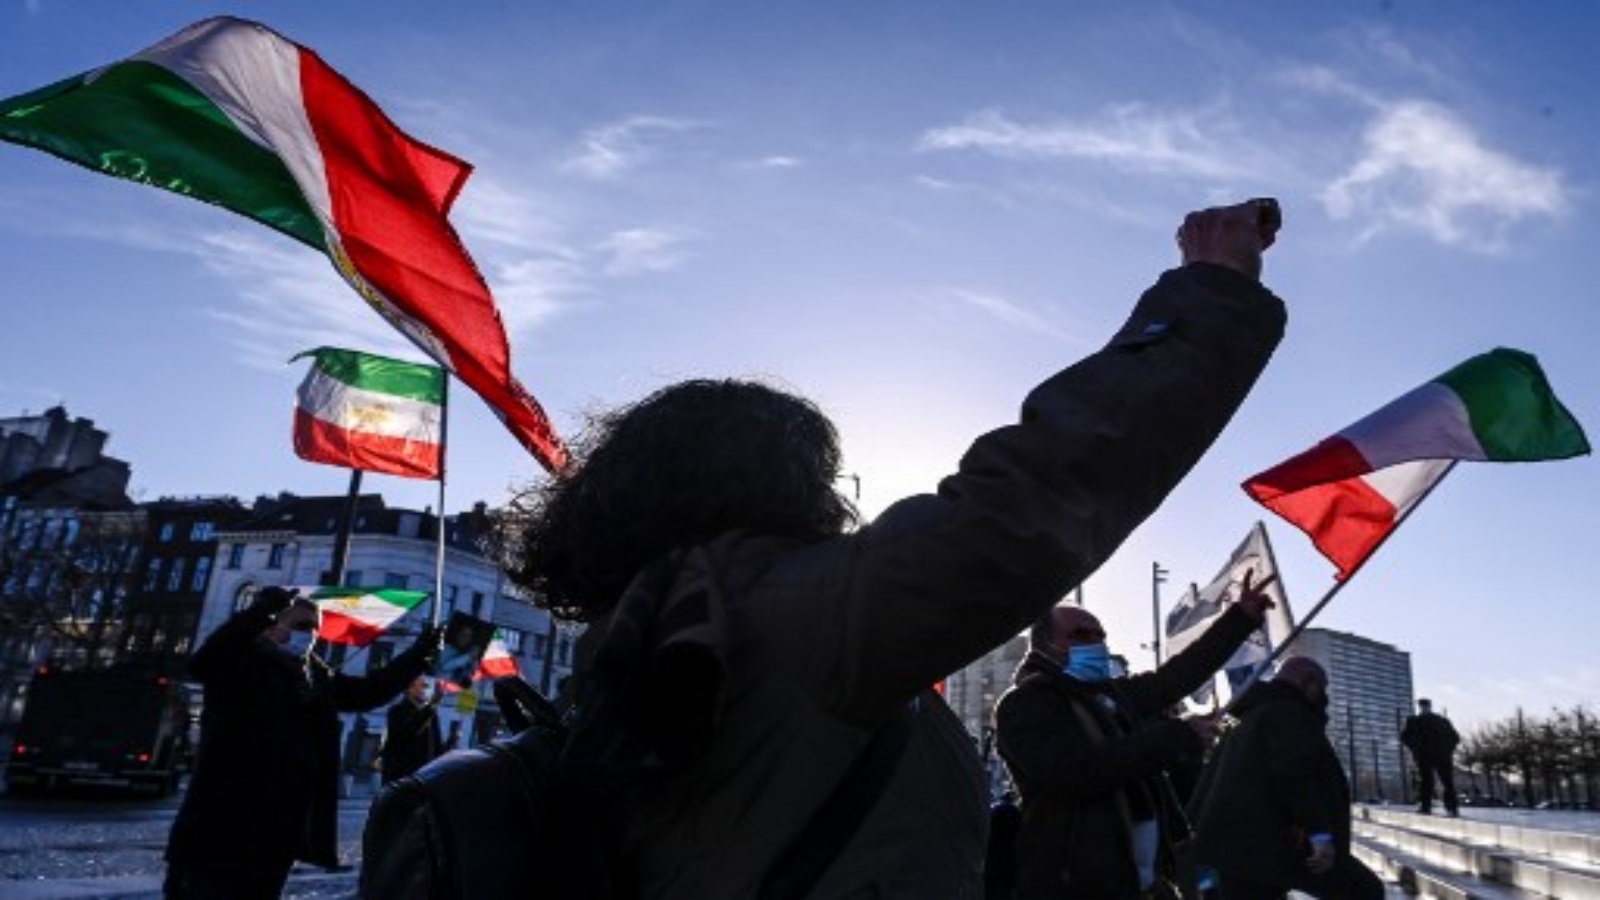 متظاهرون يلوحون بأعلام إيران السابقة أثناء احتجاجهم أمام محكمة أنتويرب الجنائية أثناء محاكمة أربعة أشخاص بينهم دبلوماسي إيراني وزوجان بلجيكيان إيرانيان في أنتويرب ، في 4 فبراير 2021